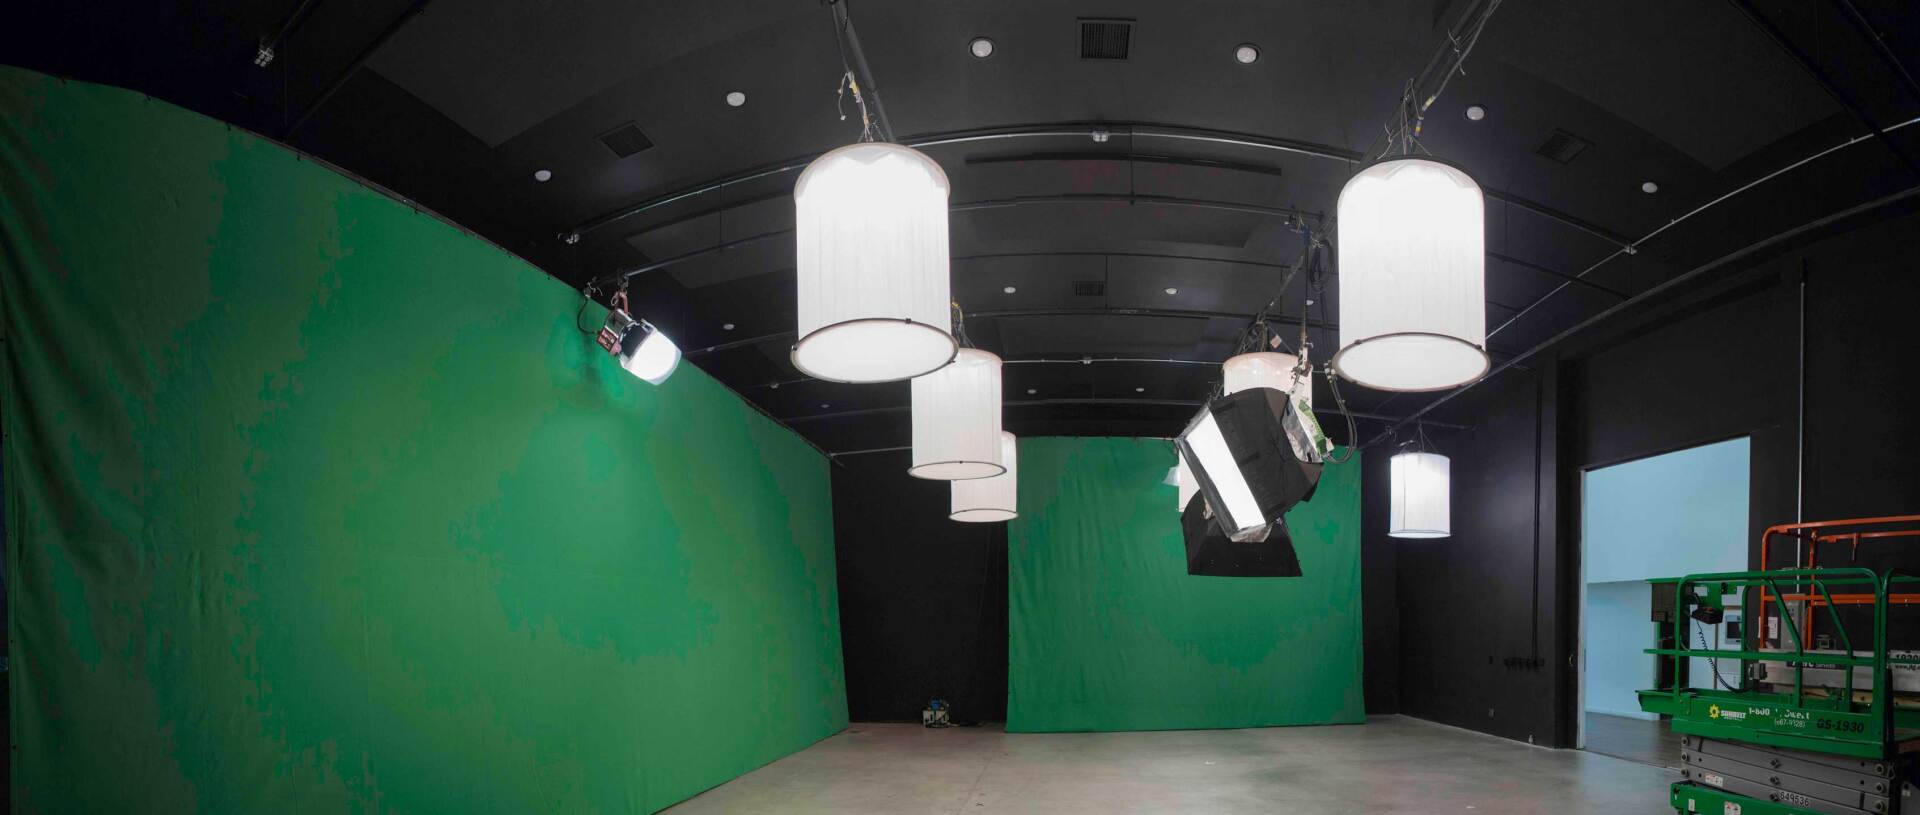 Green Screen Production Studio — Canoga Park, CA — Dream Magic Studios